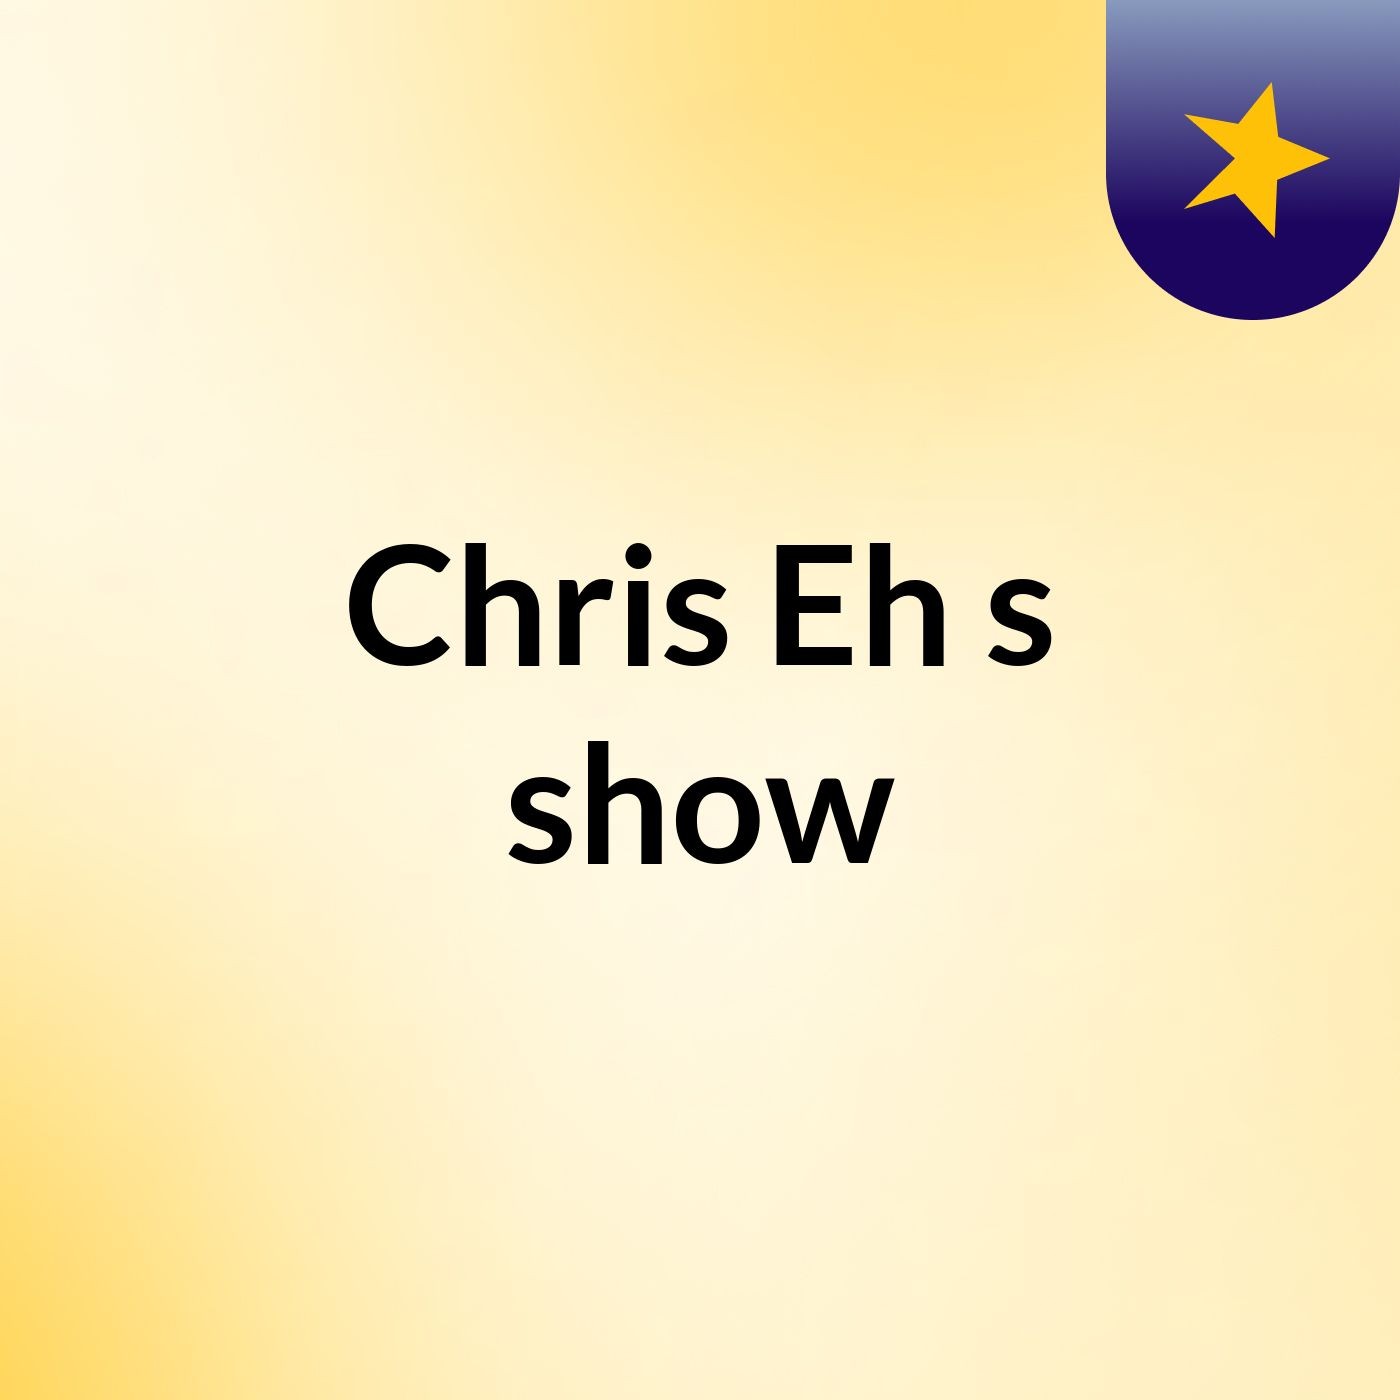 Chris Eh's show